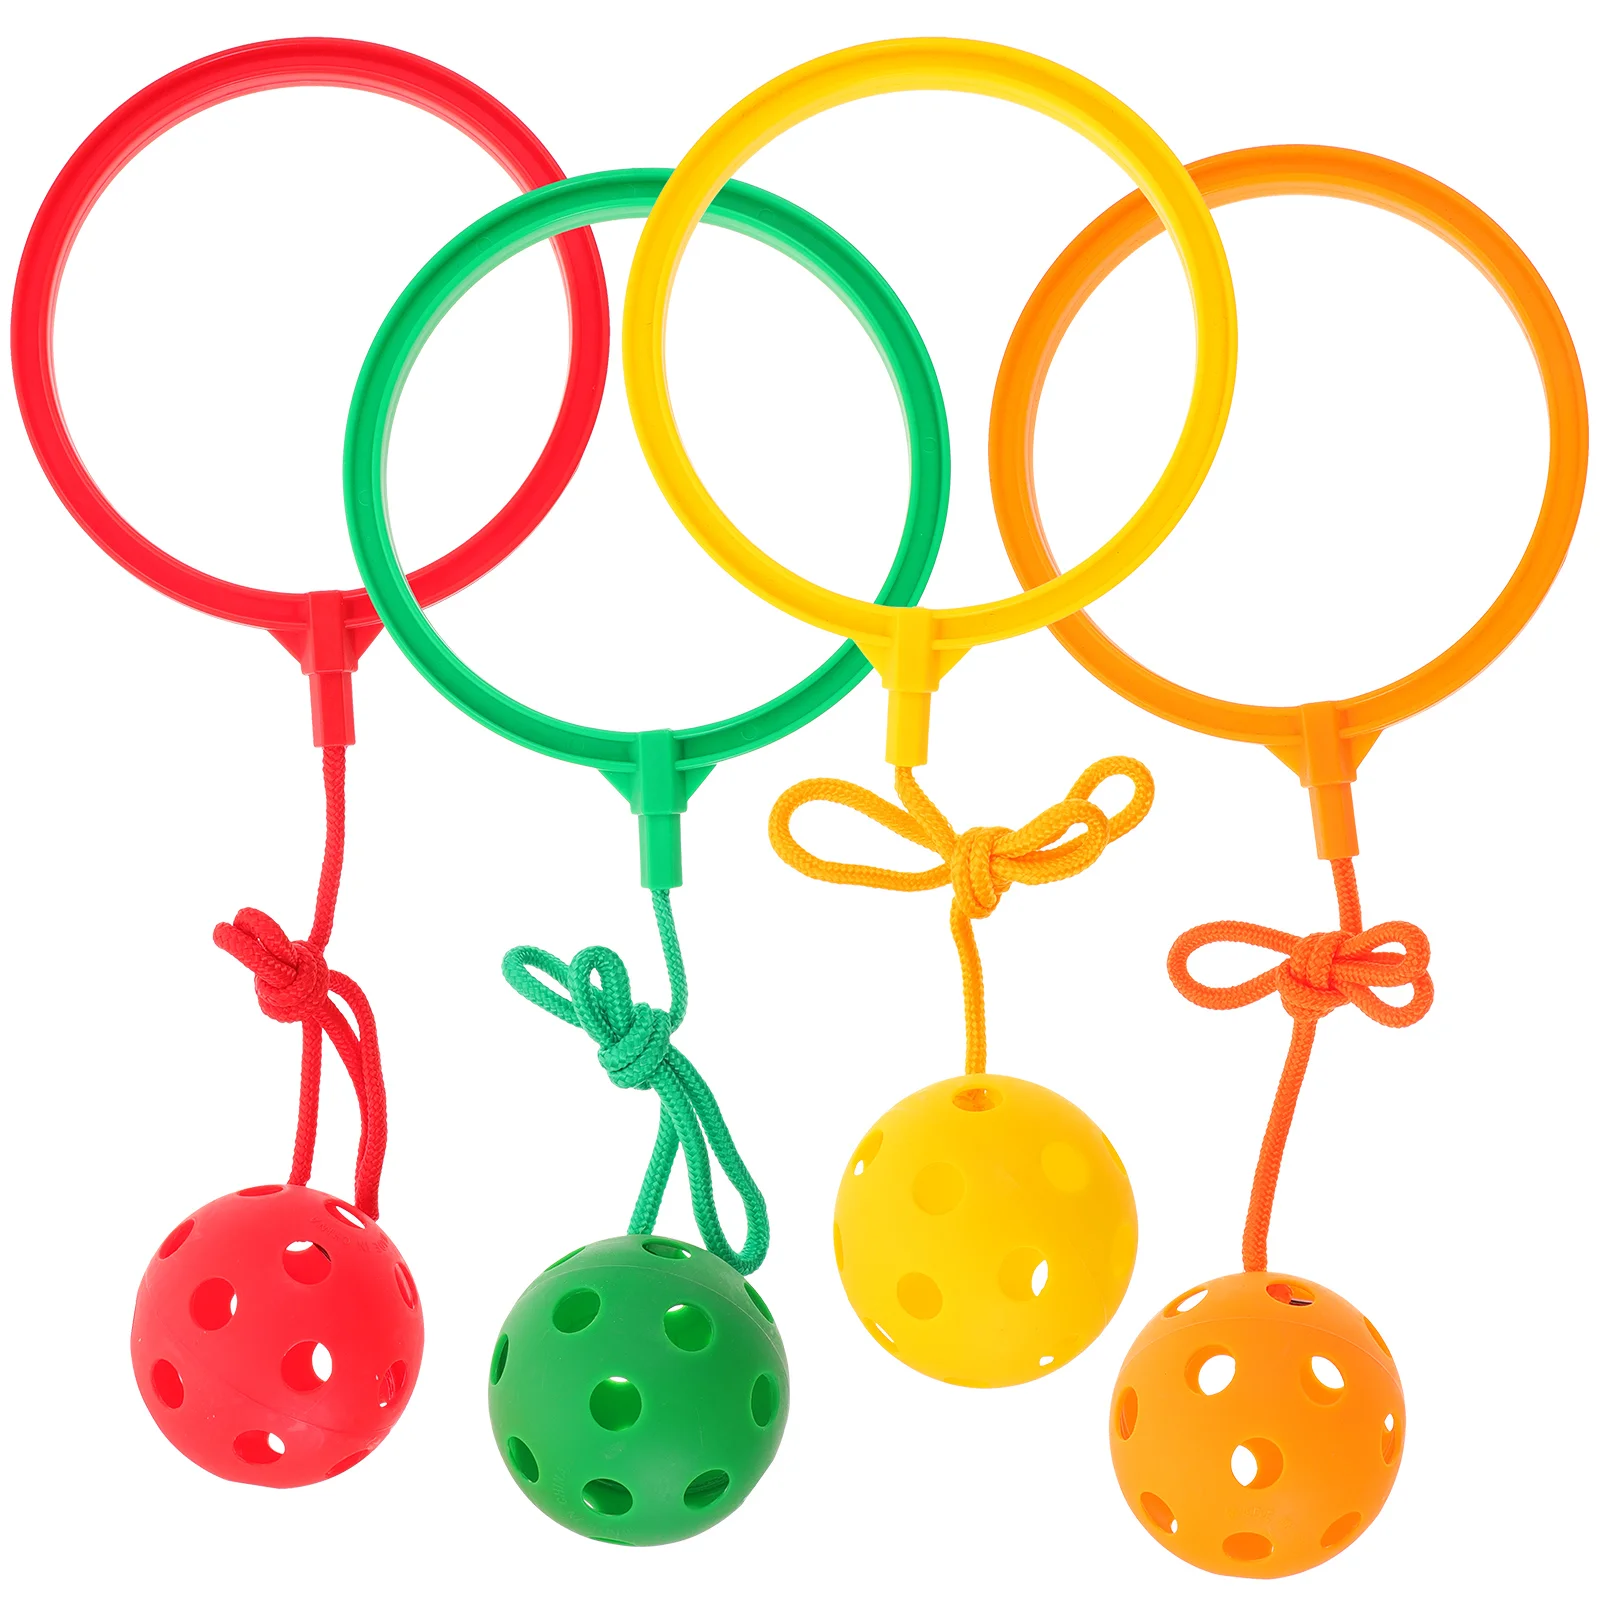 

4 комплекта, детские игрушки-антистресс для прыжков, мячи для фитнеса, игры для детей на лодыжке, кольцо для прыжков (оранжевый/красный/желтый/зеленый)